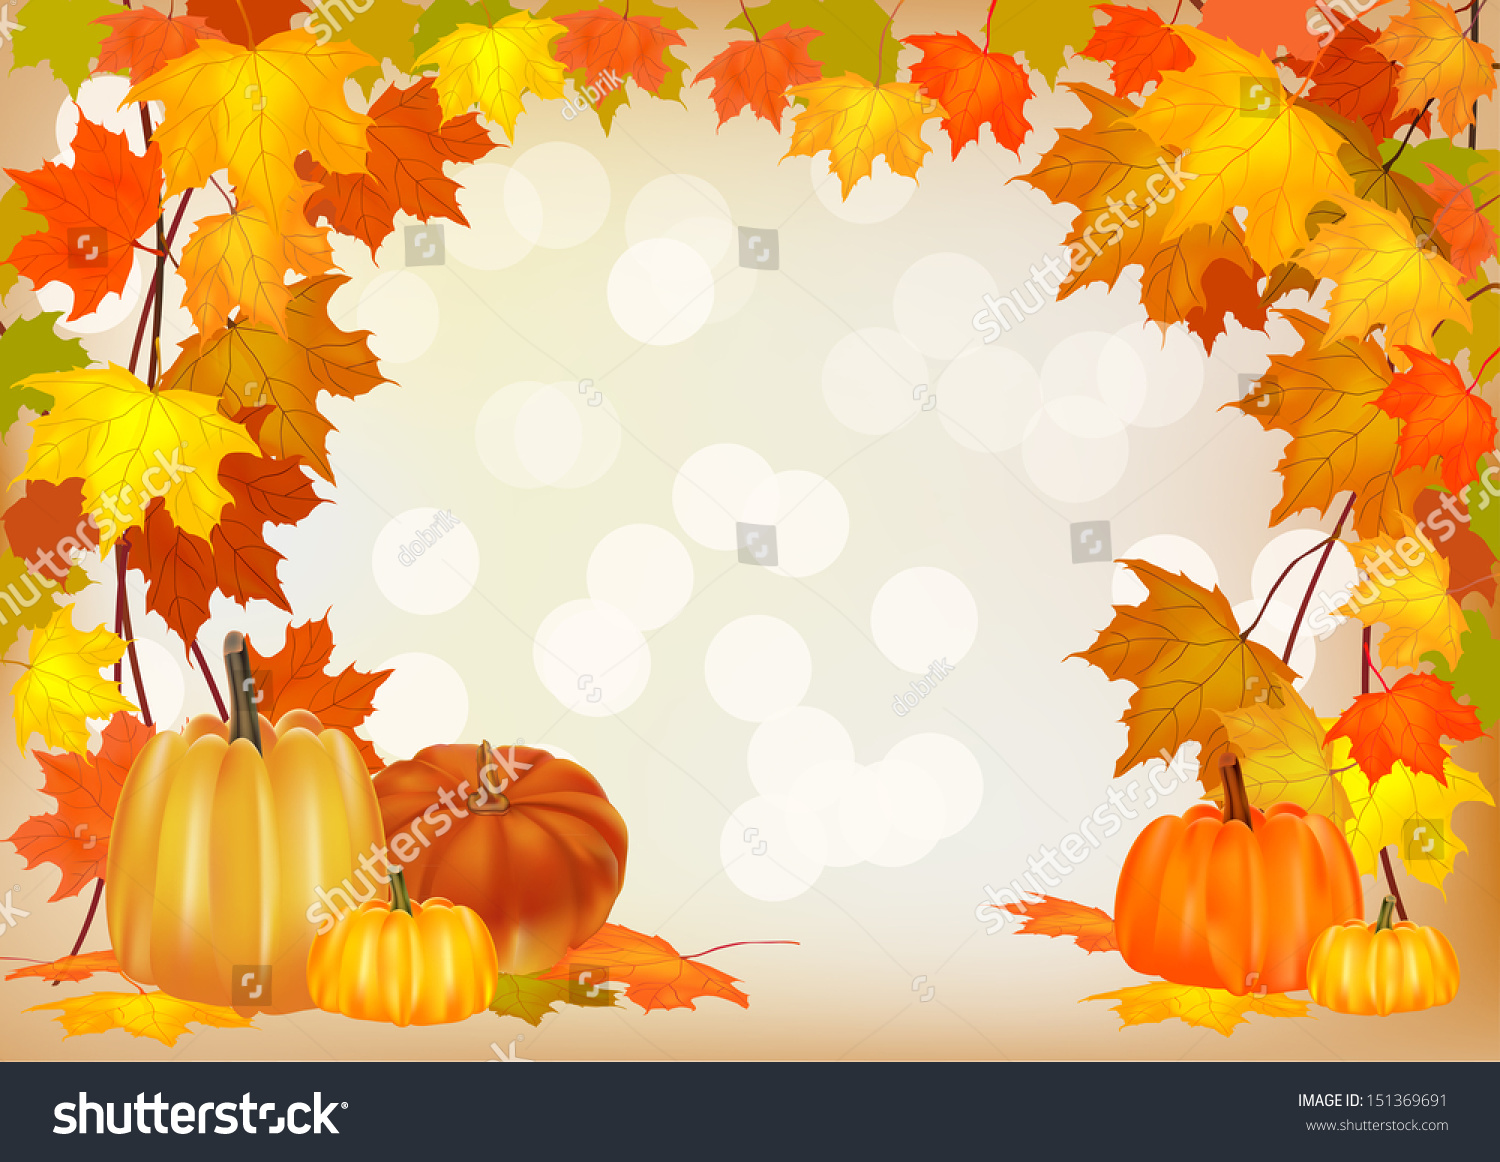 Autumn Pumpkin Holiday Postcard Stock Vector Illustration 151369691 ...